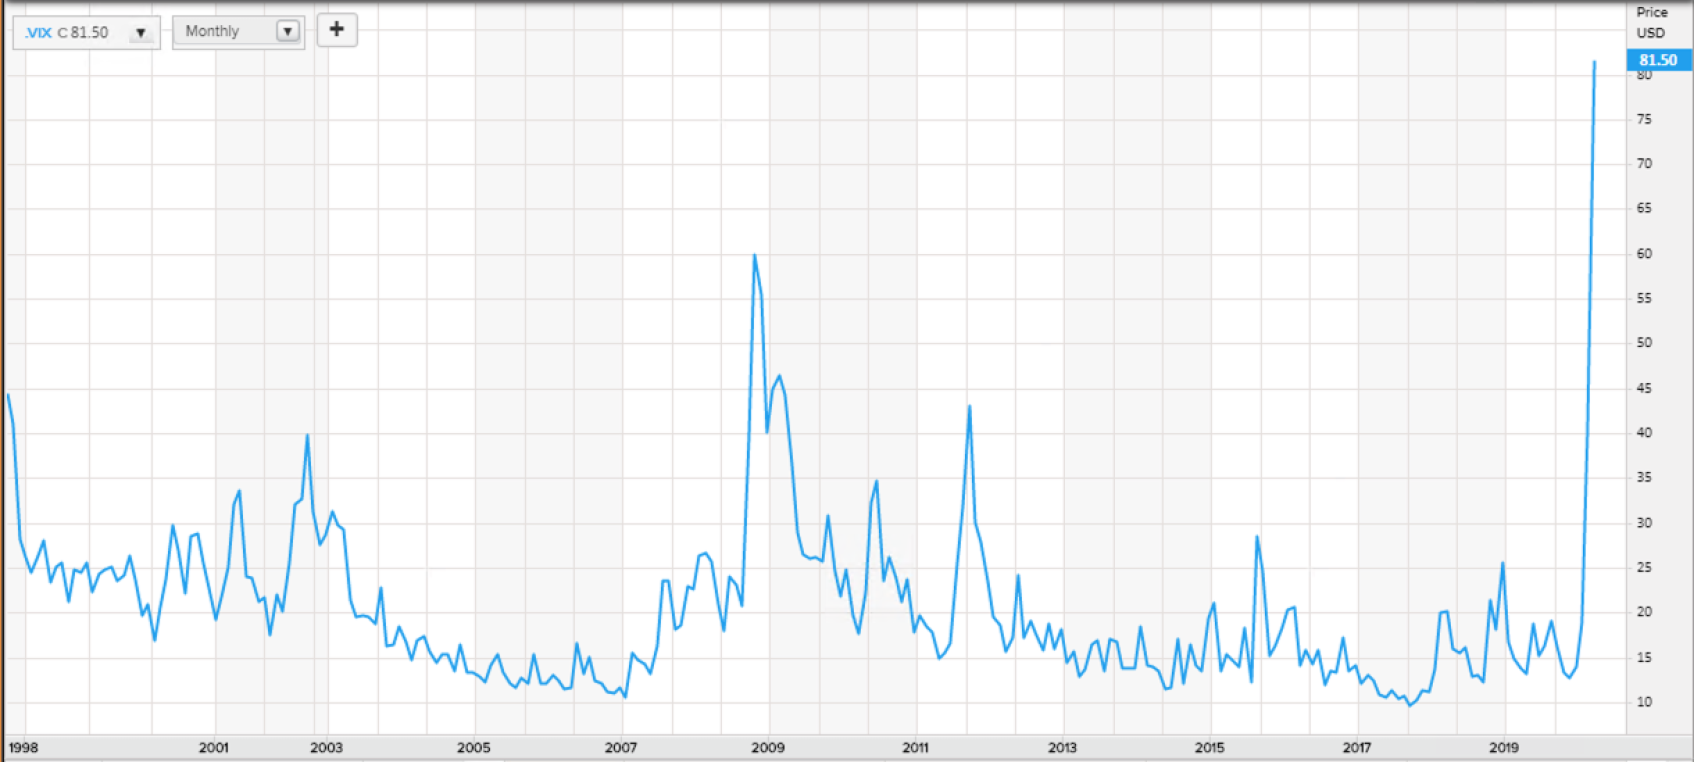 Sturm_Volatilität Aktien USA 1999 - 2020_03